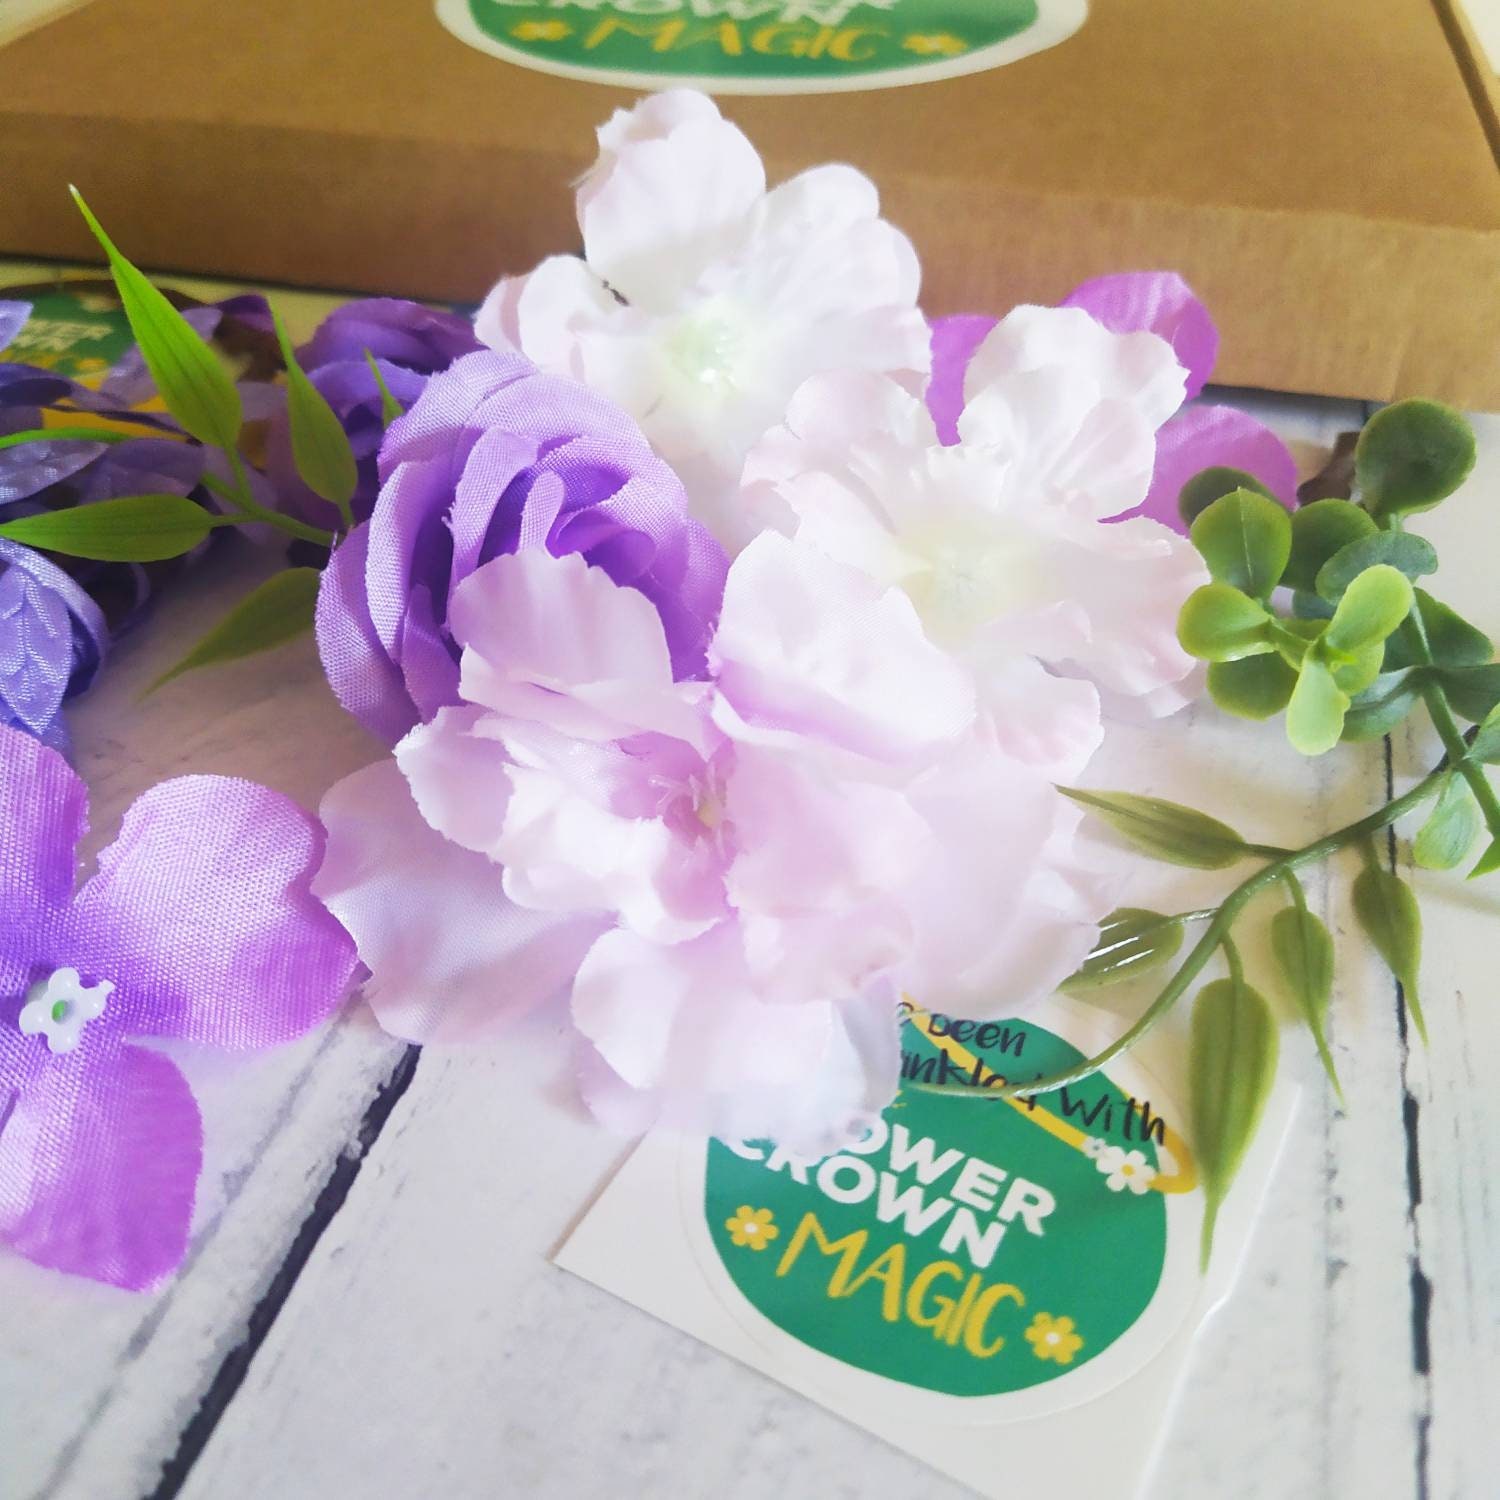 DIY Lavender Flower Crown KIt – Imagine Childhood